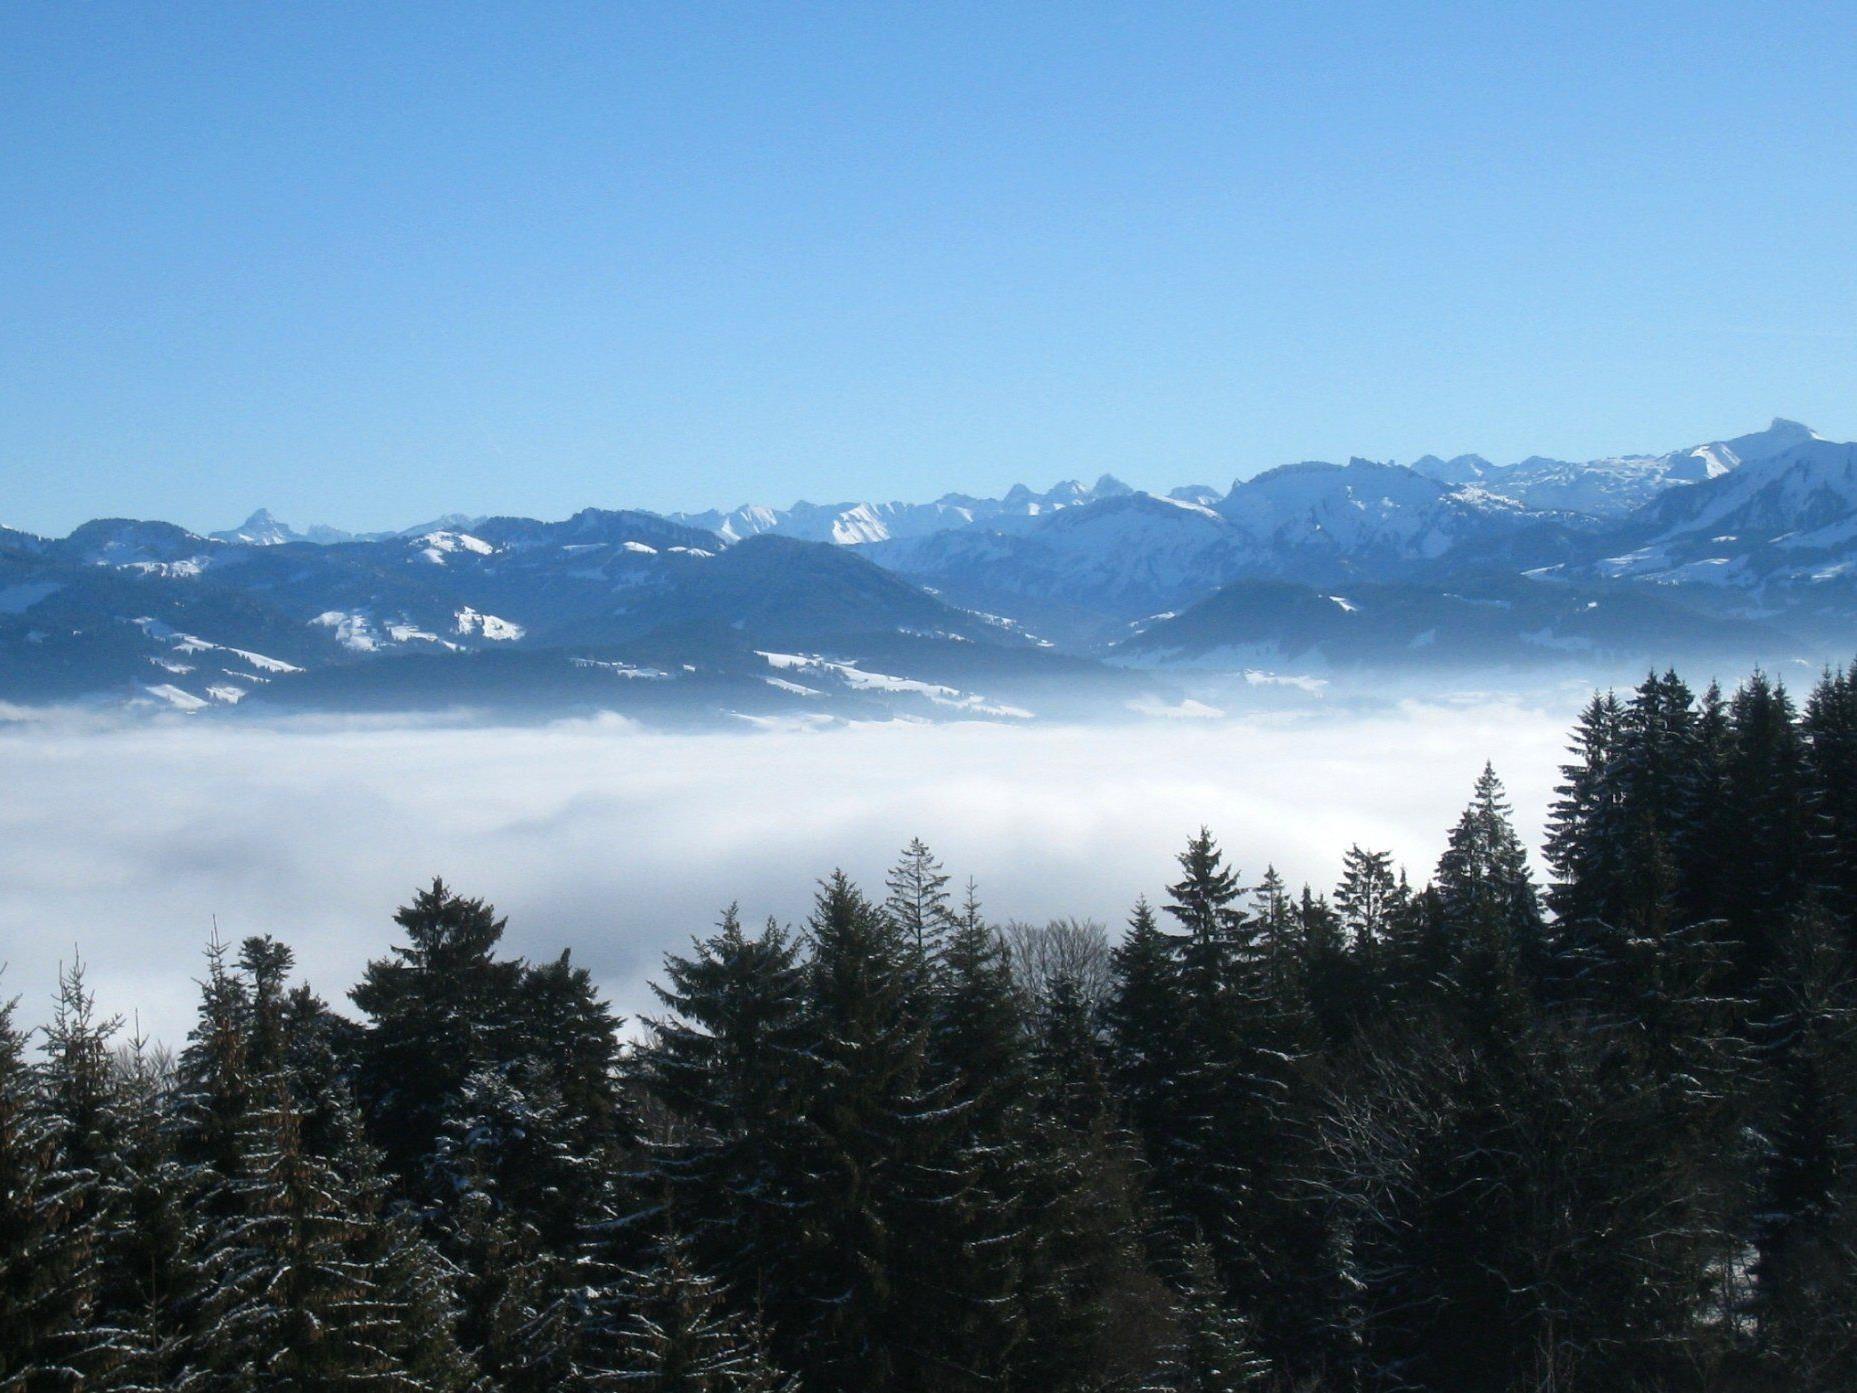 Nebel im Tal, Sonnenschein und eine grandiose Aussicht auf dem Berg.